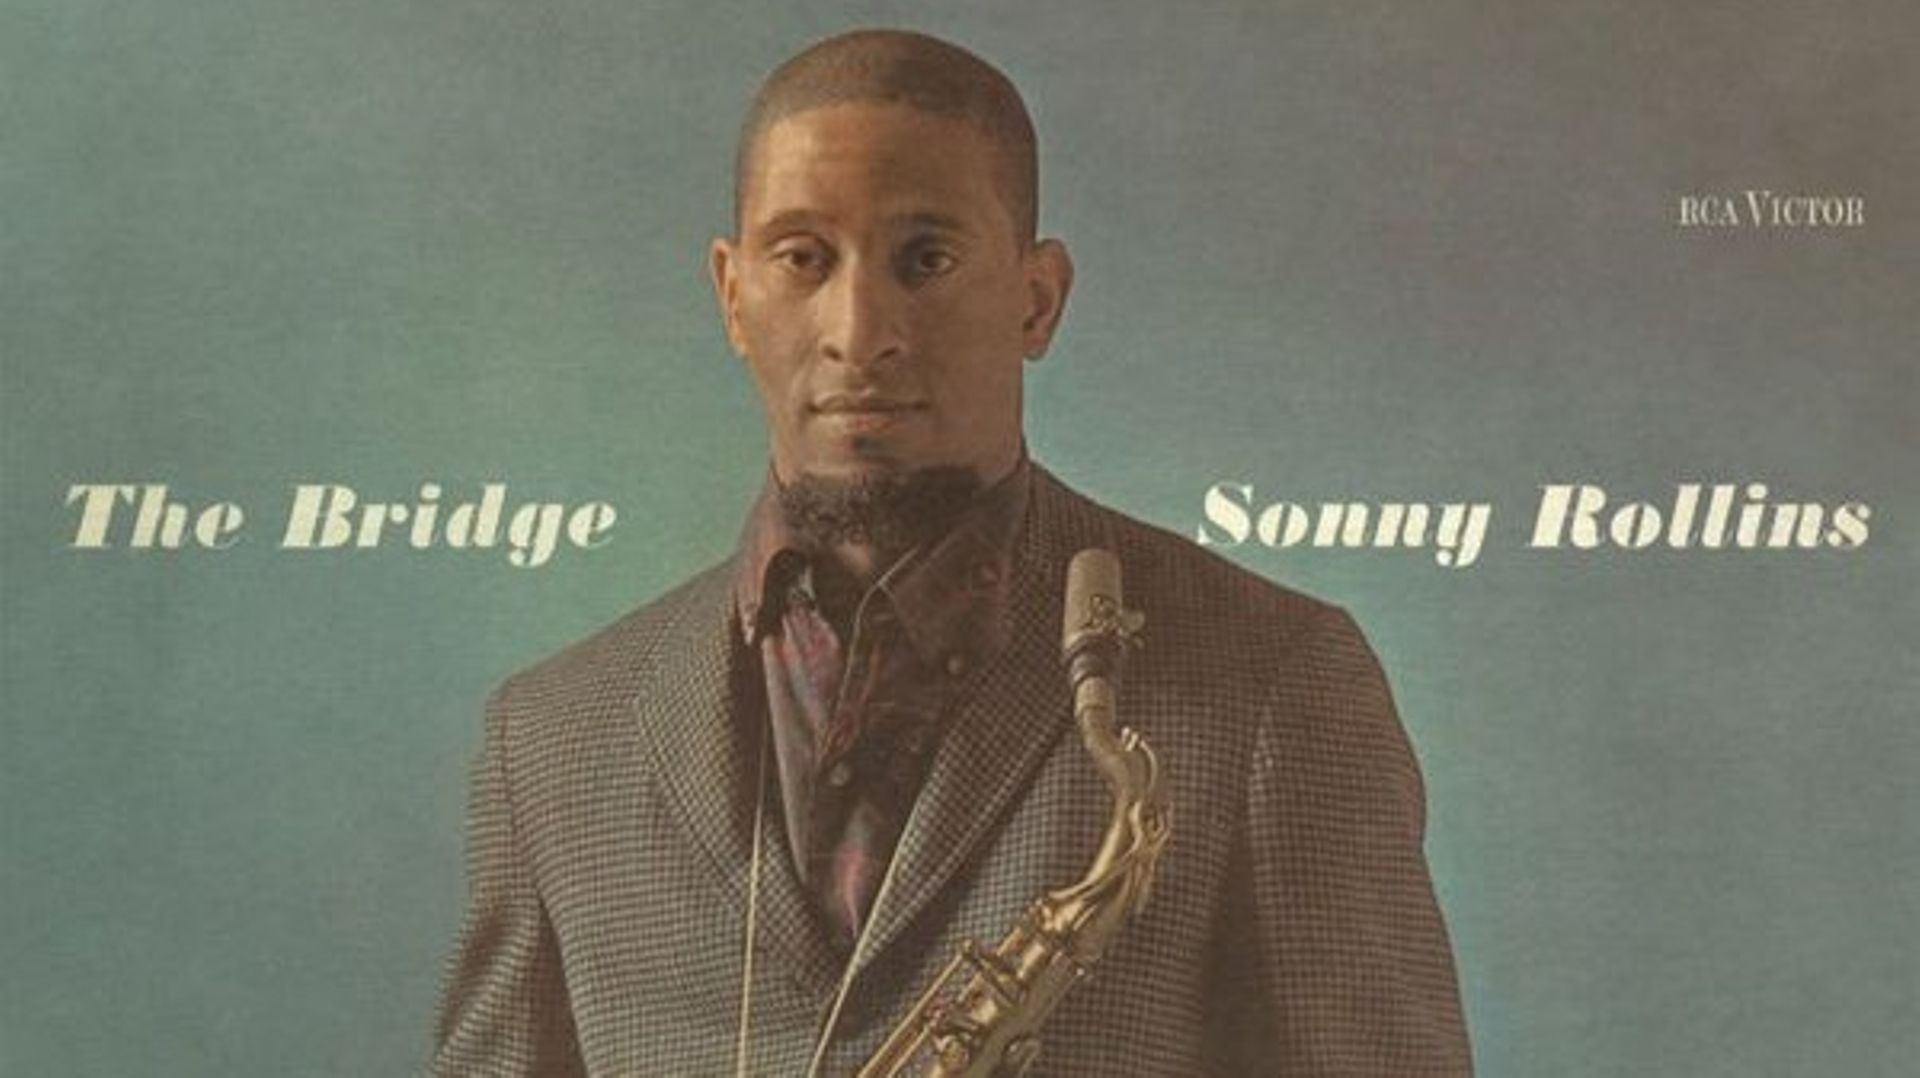 Il y a 60 ans s’enregistrait l’album "The Bridge" de Sonny Rollins